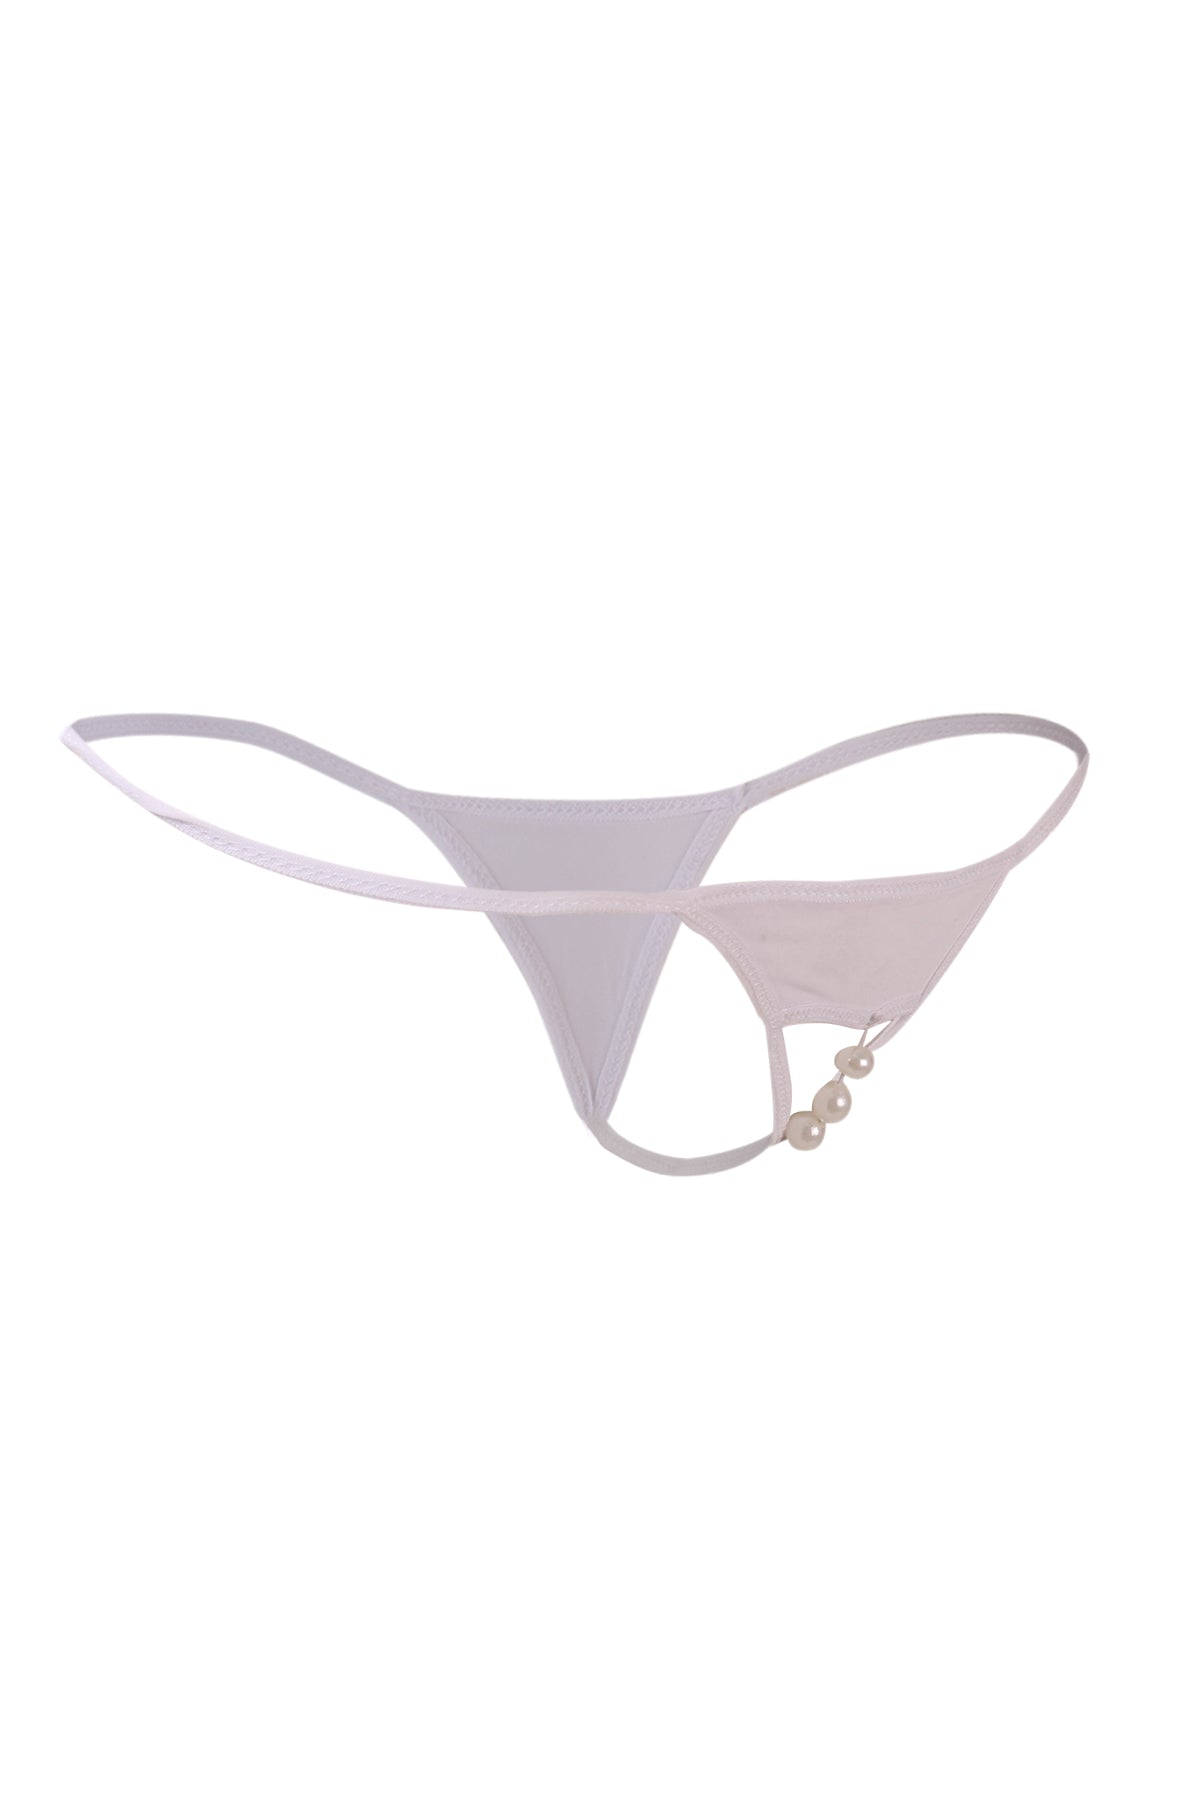 Shop ItspleaZure Womens Sexy Open Crotch Pearl Thong at Best Price at  Online XXX Store Itspleazure – itspleaZure